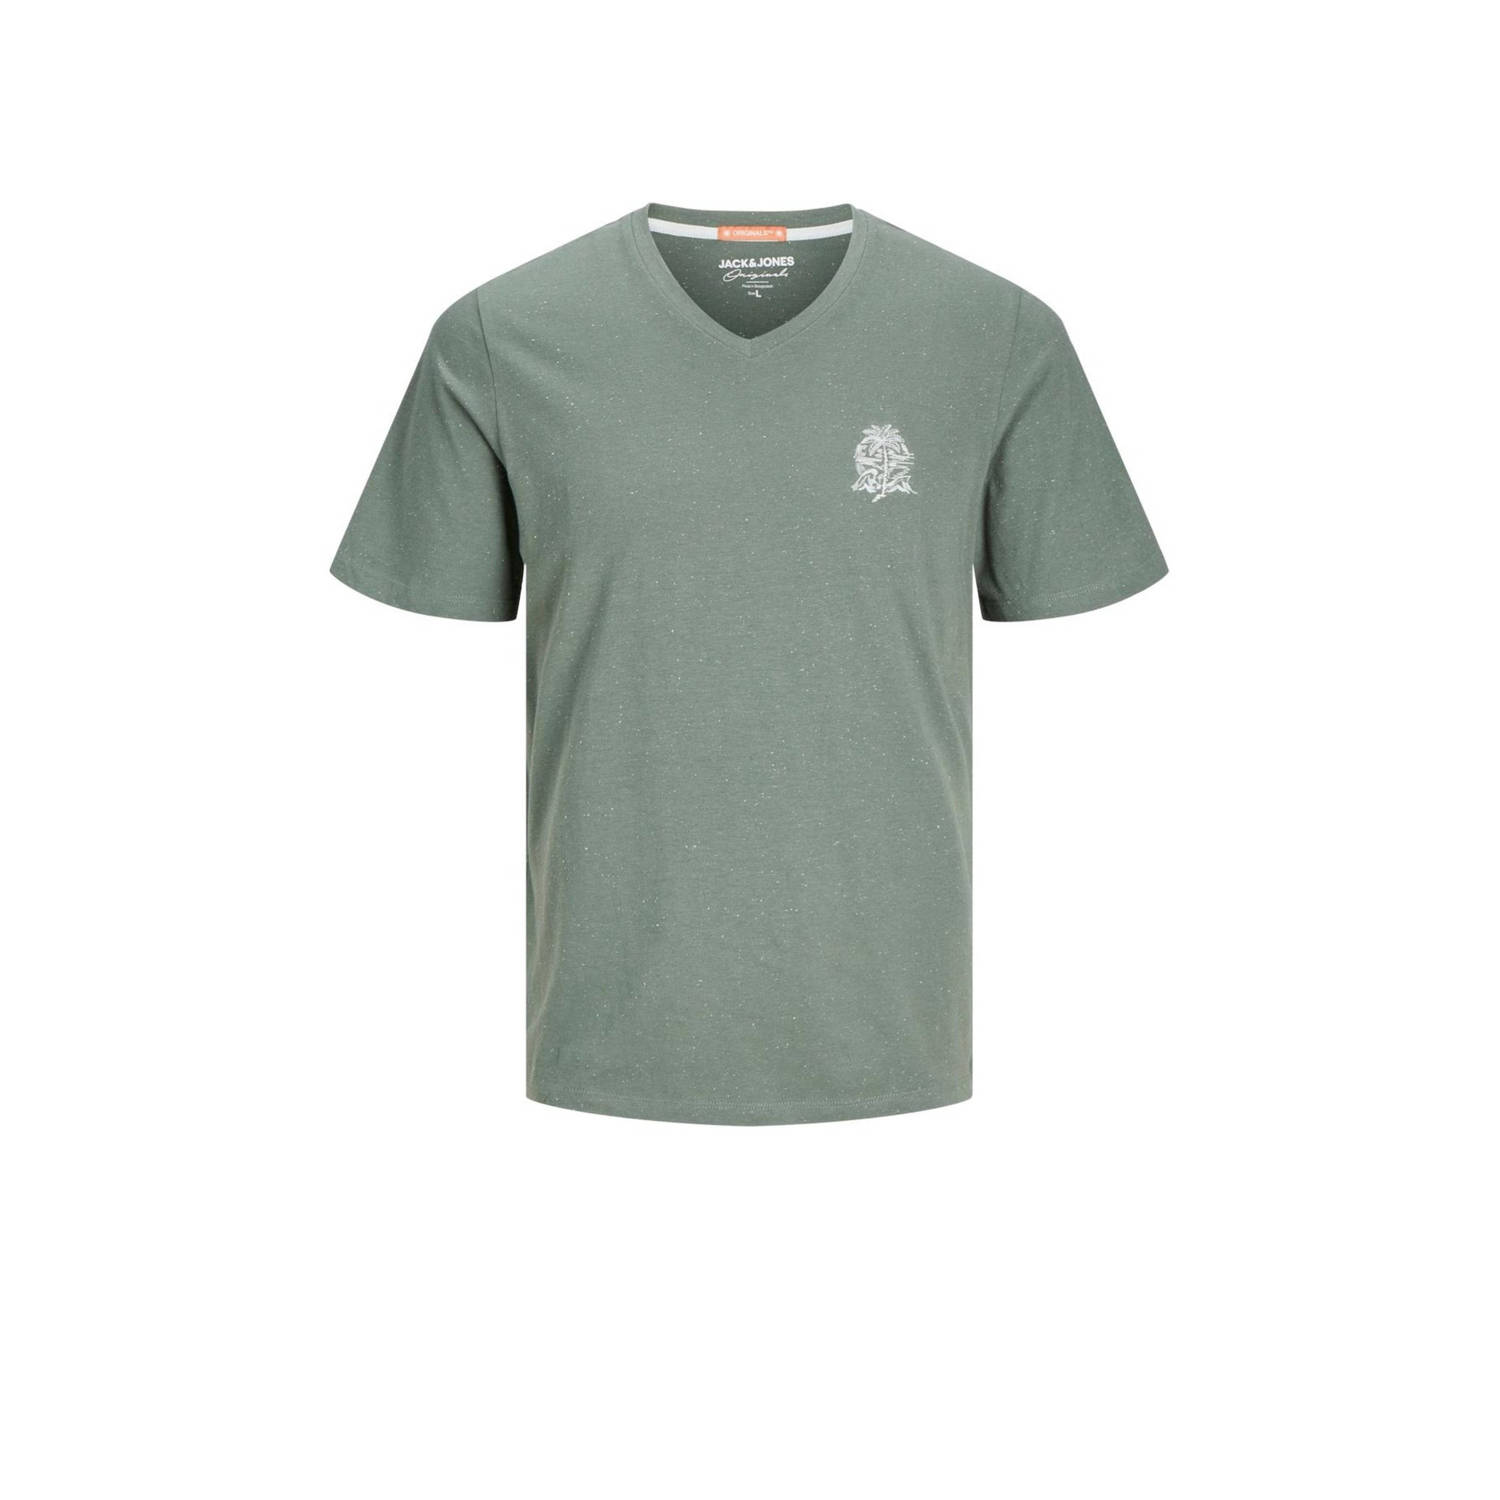 Jack & jones JUNIOR T-shirt JORPALM met printopdruk groen Jongens Katoen V-hals 128